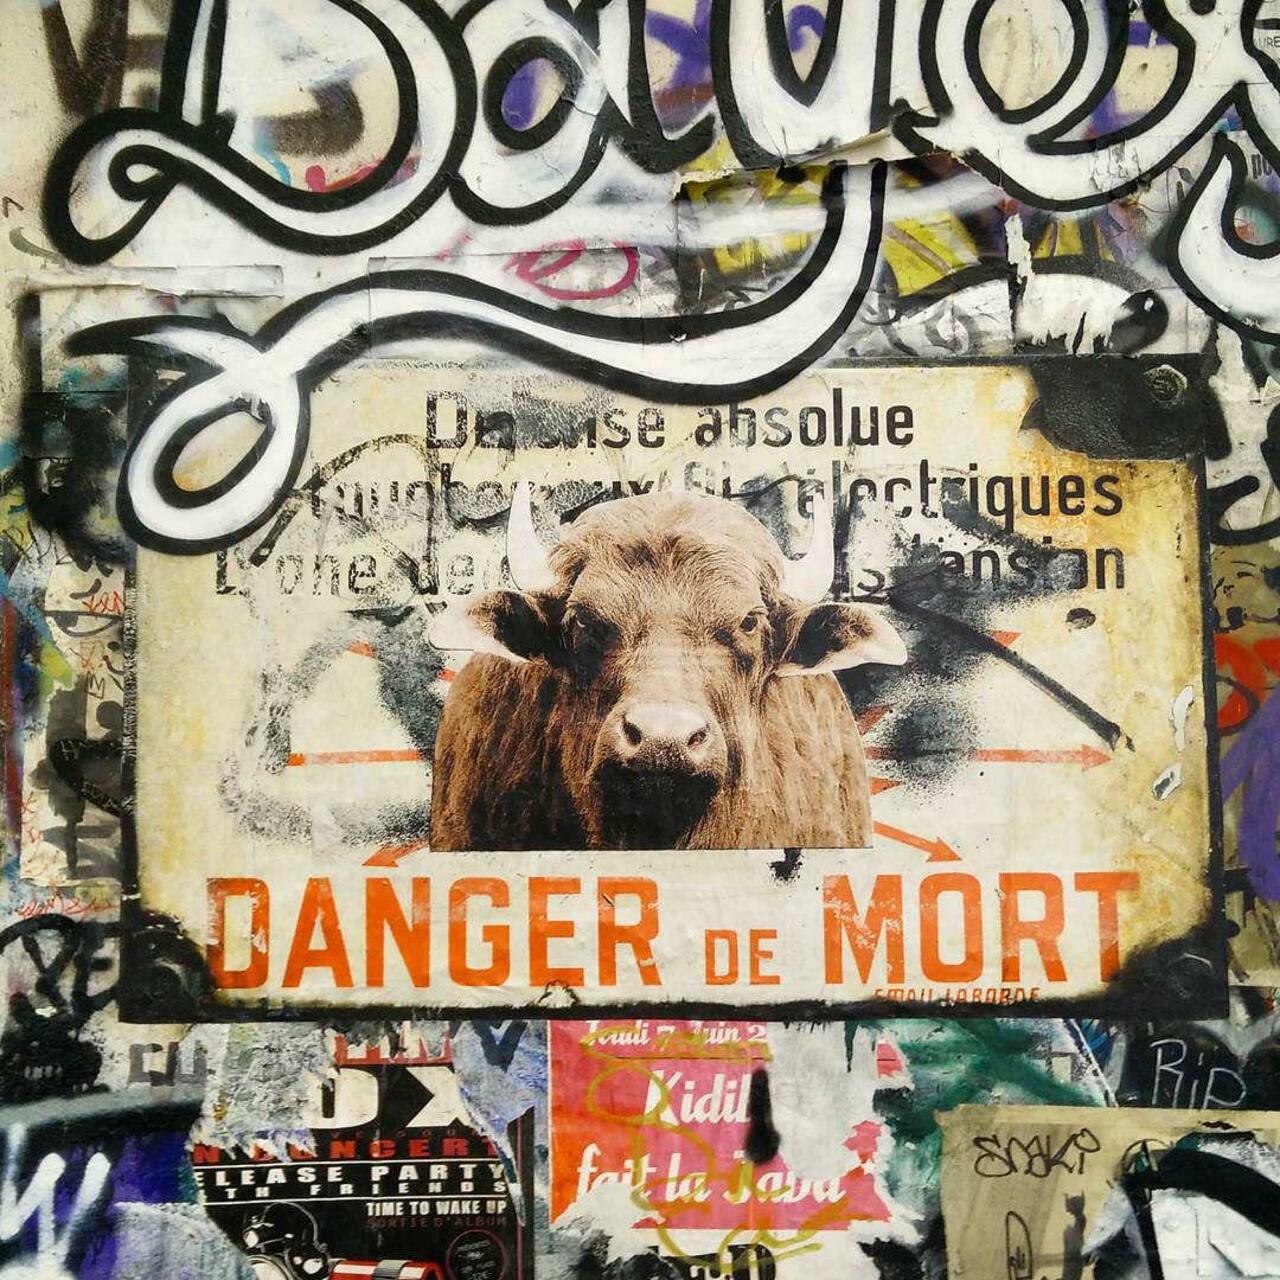 circumjacent_fr: #Paris #graffiti photo by ceky_art http://ift.tt/1VuHWx3 #StreetArt http://t.co/hvb3NSFMgC